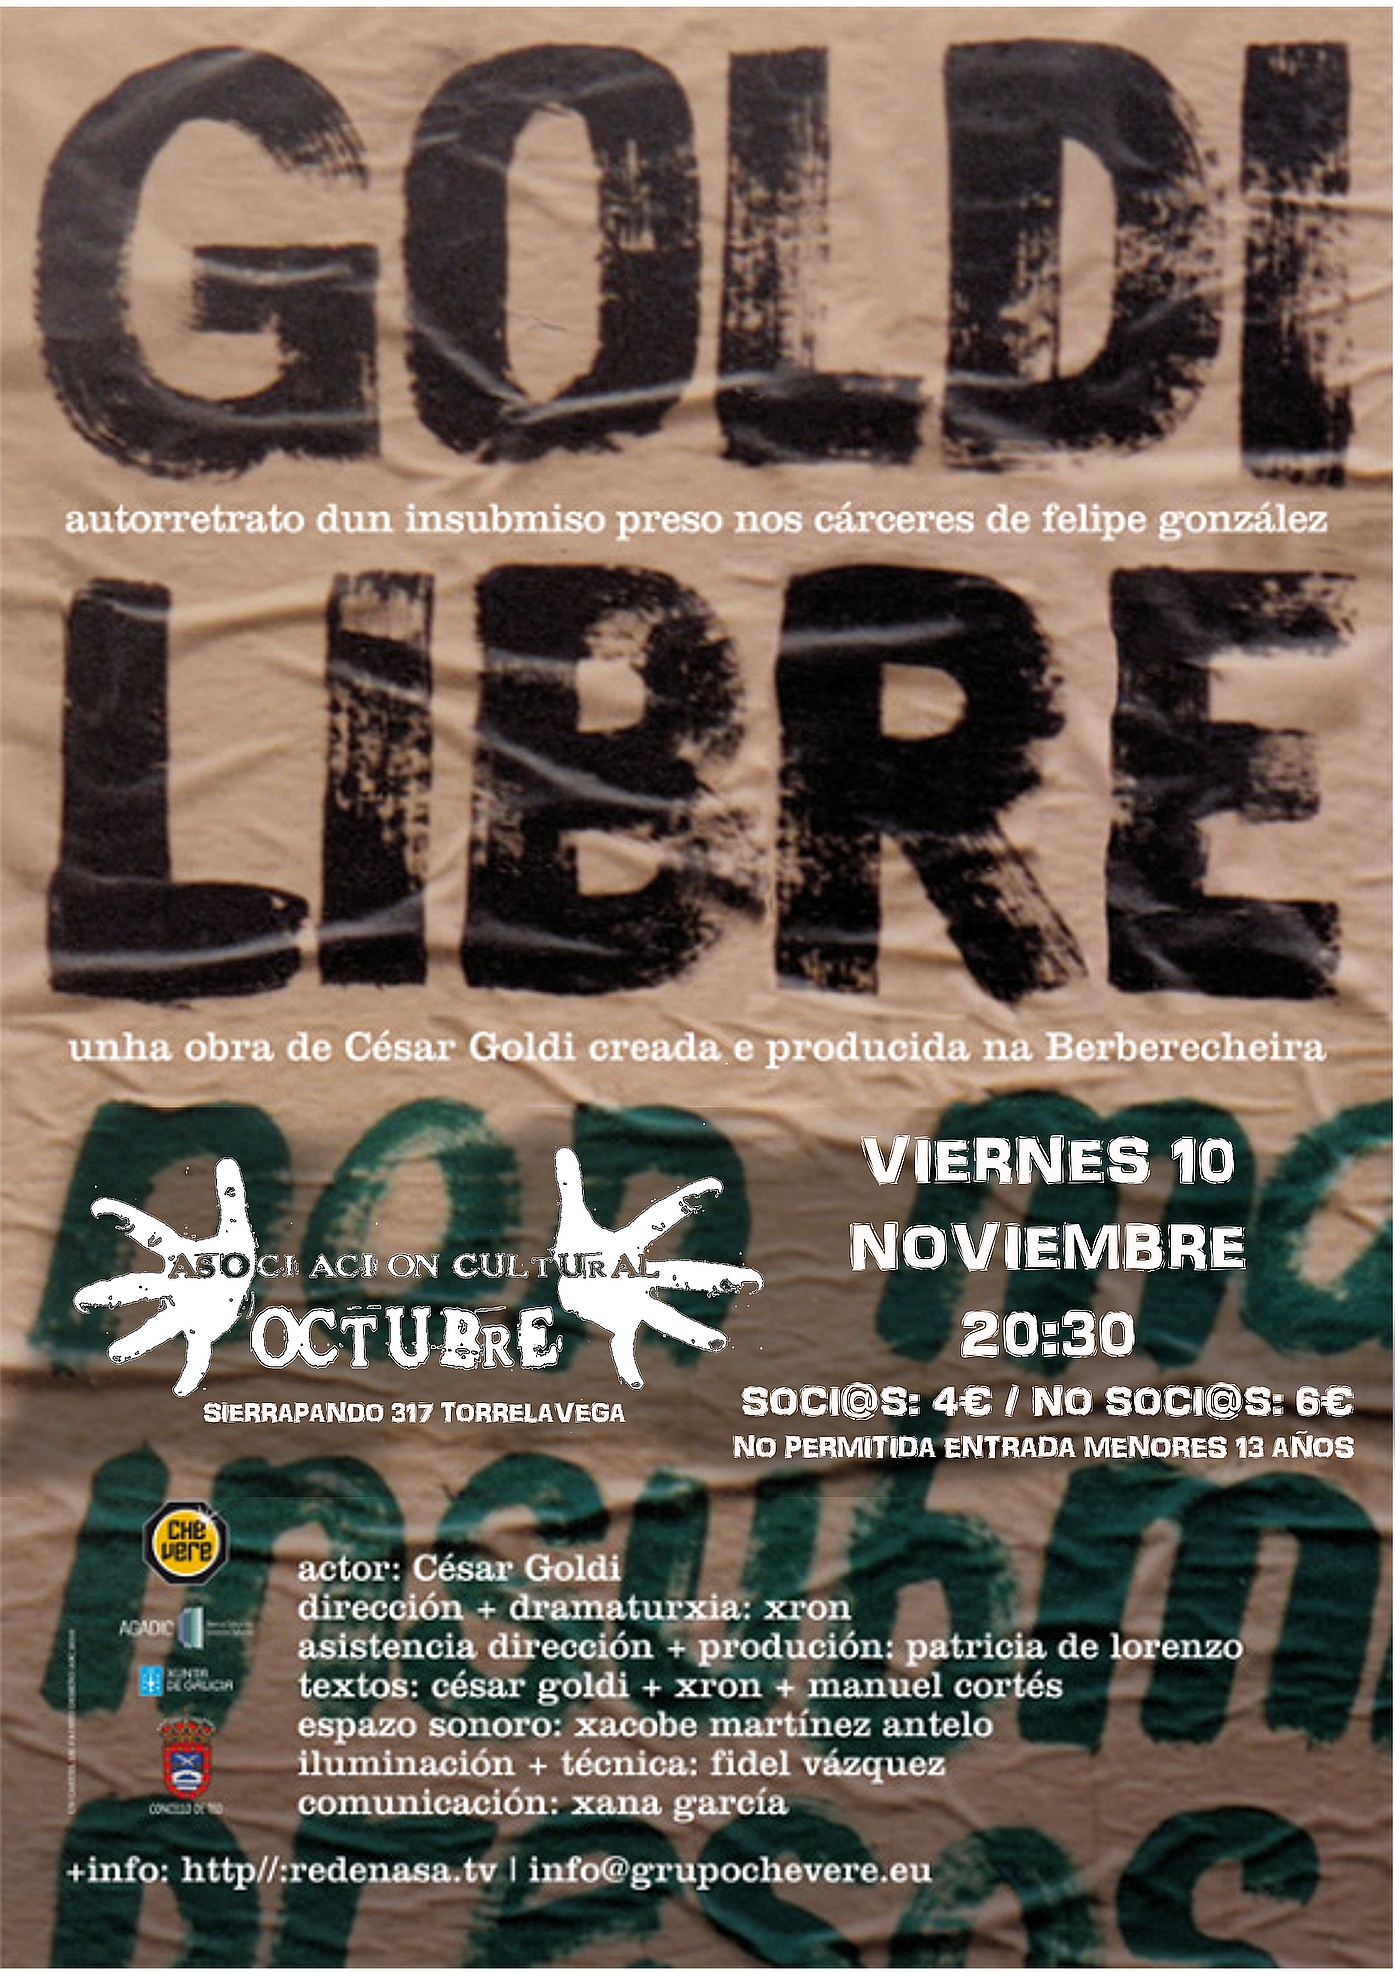 La Asociación Cultural Octubre acoge la obra "Goldi libre"